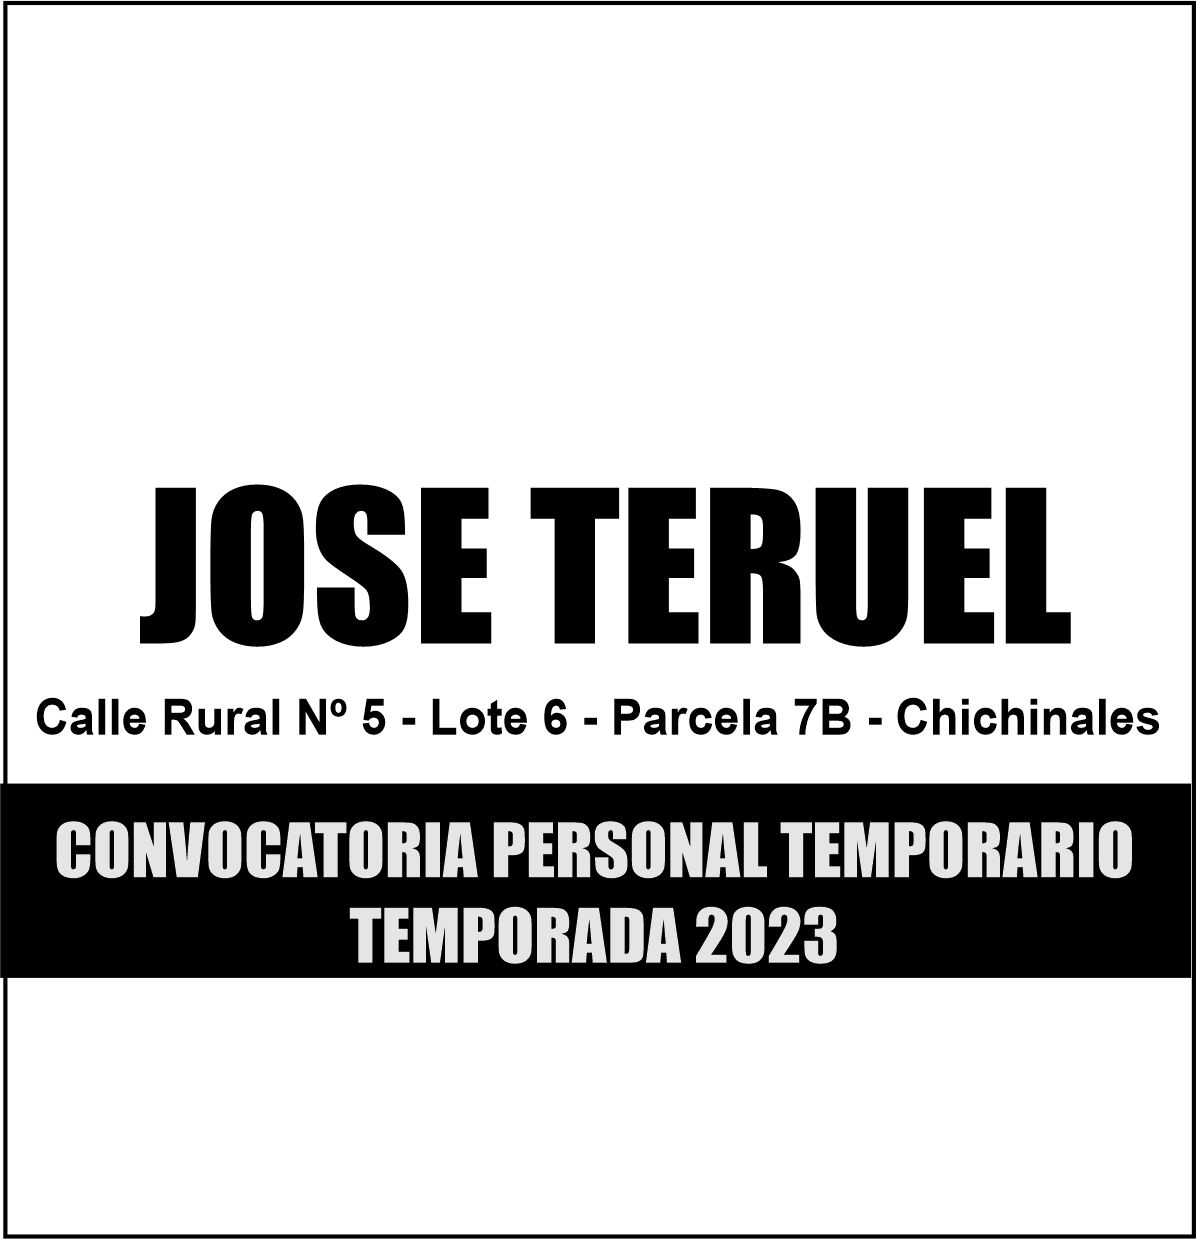 Convocartoria a Personal Temporario 2023: José Teruel